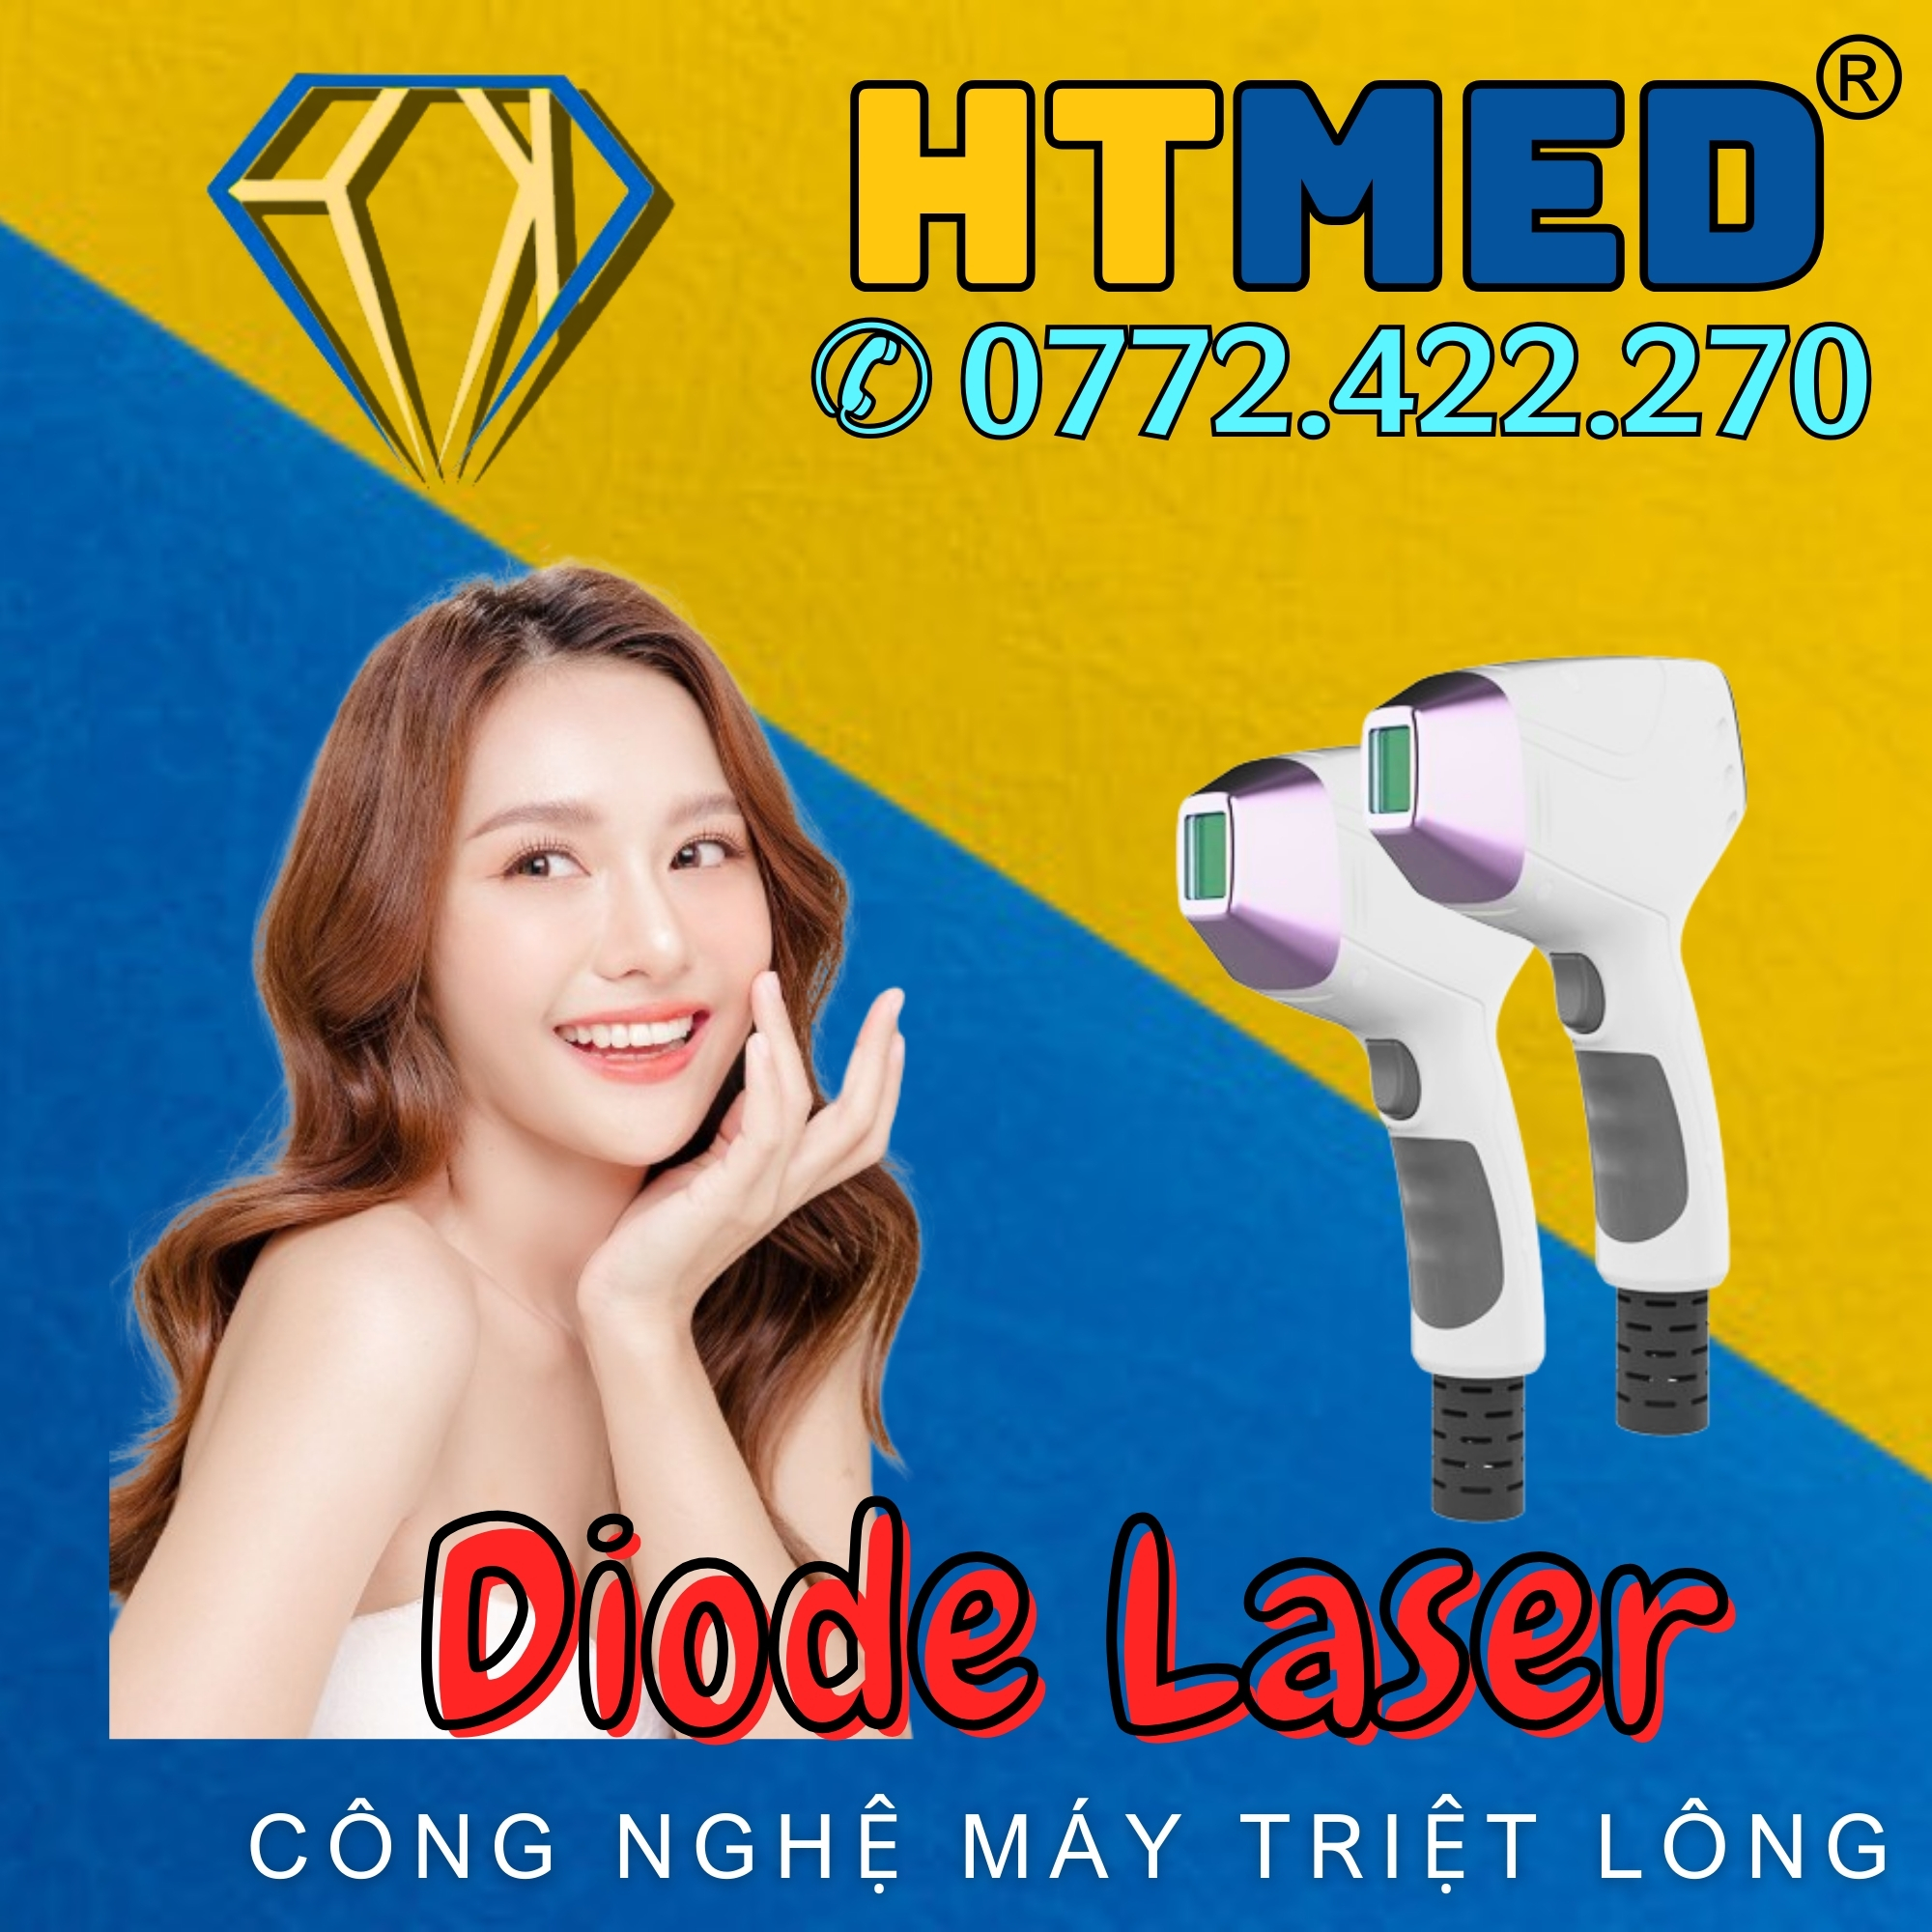 Công nghệ Diode Laser